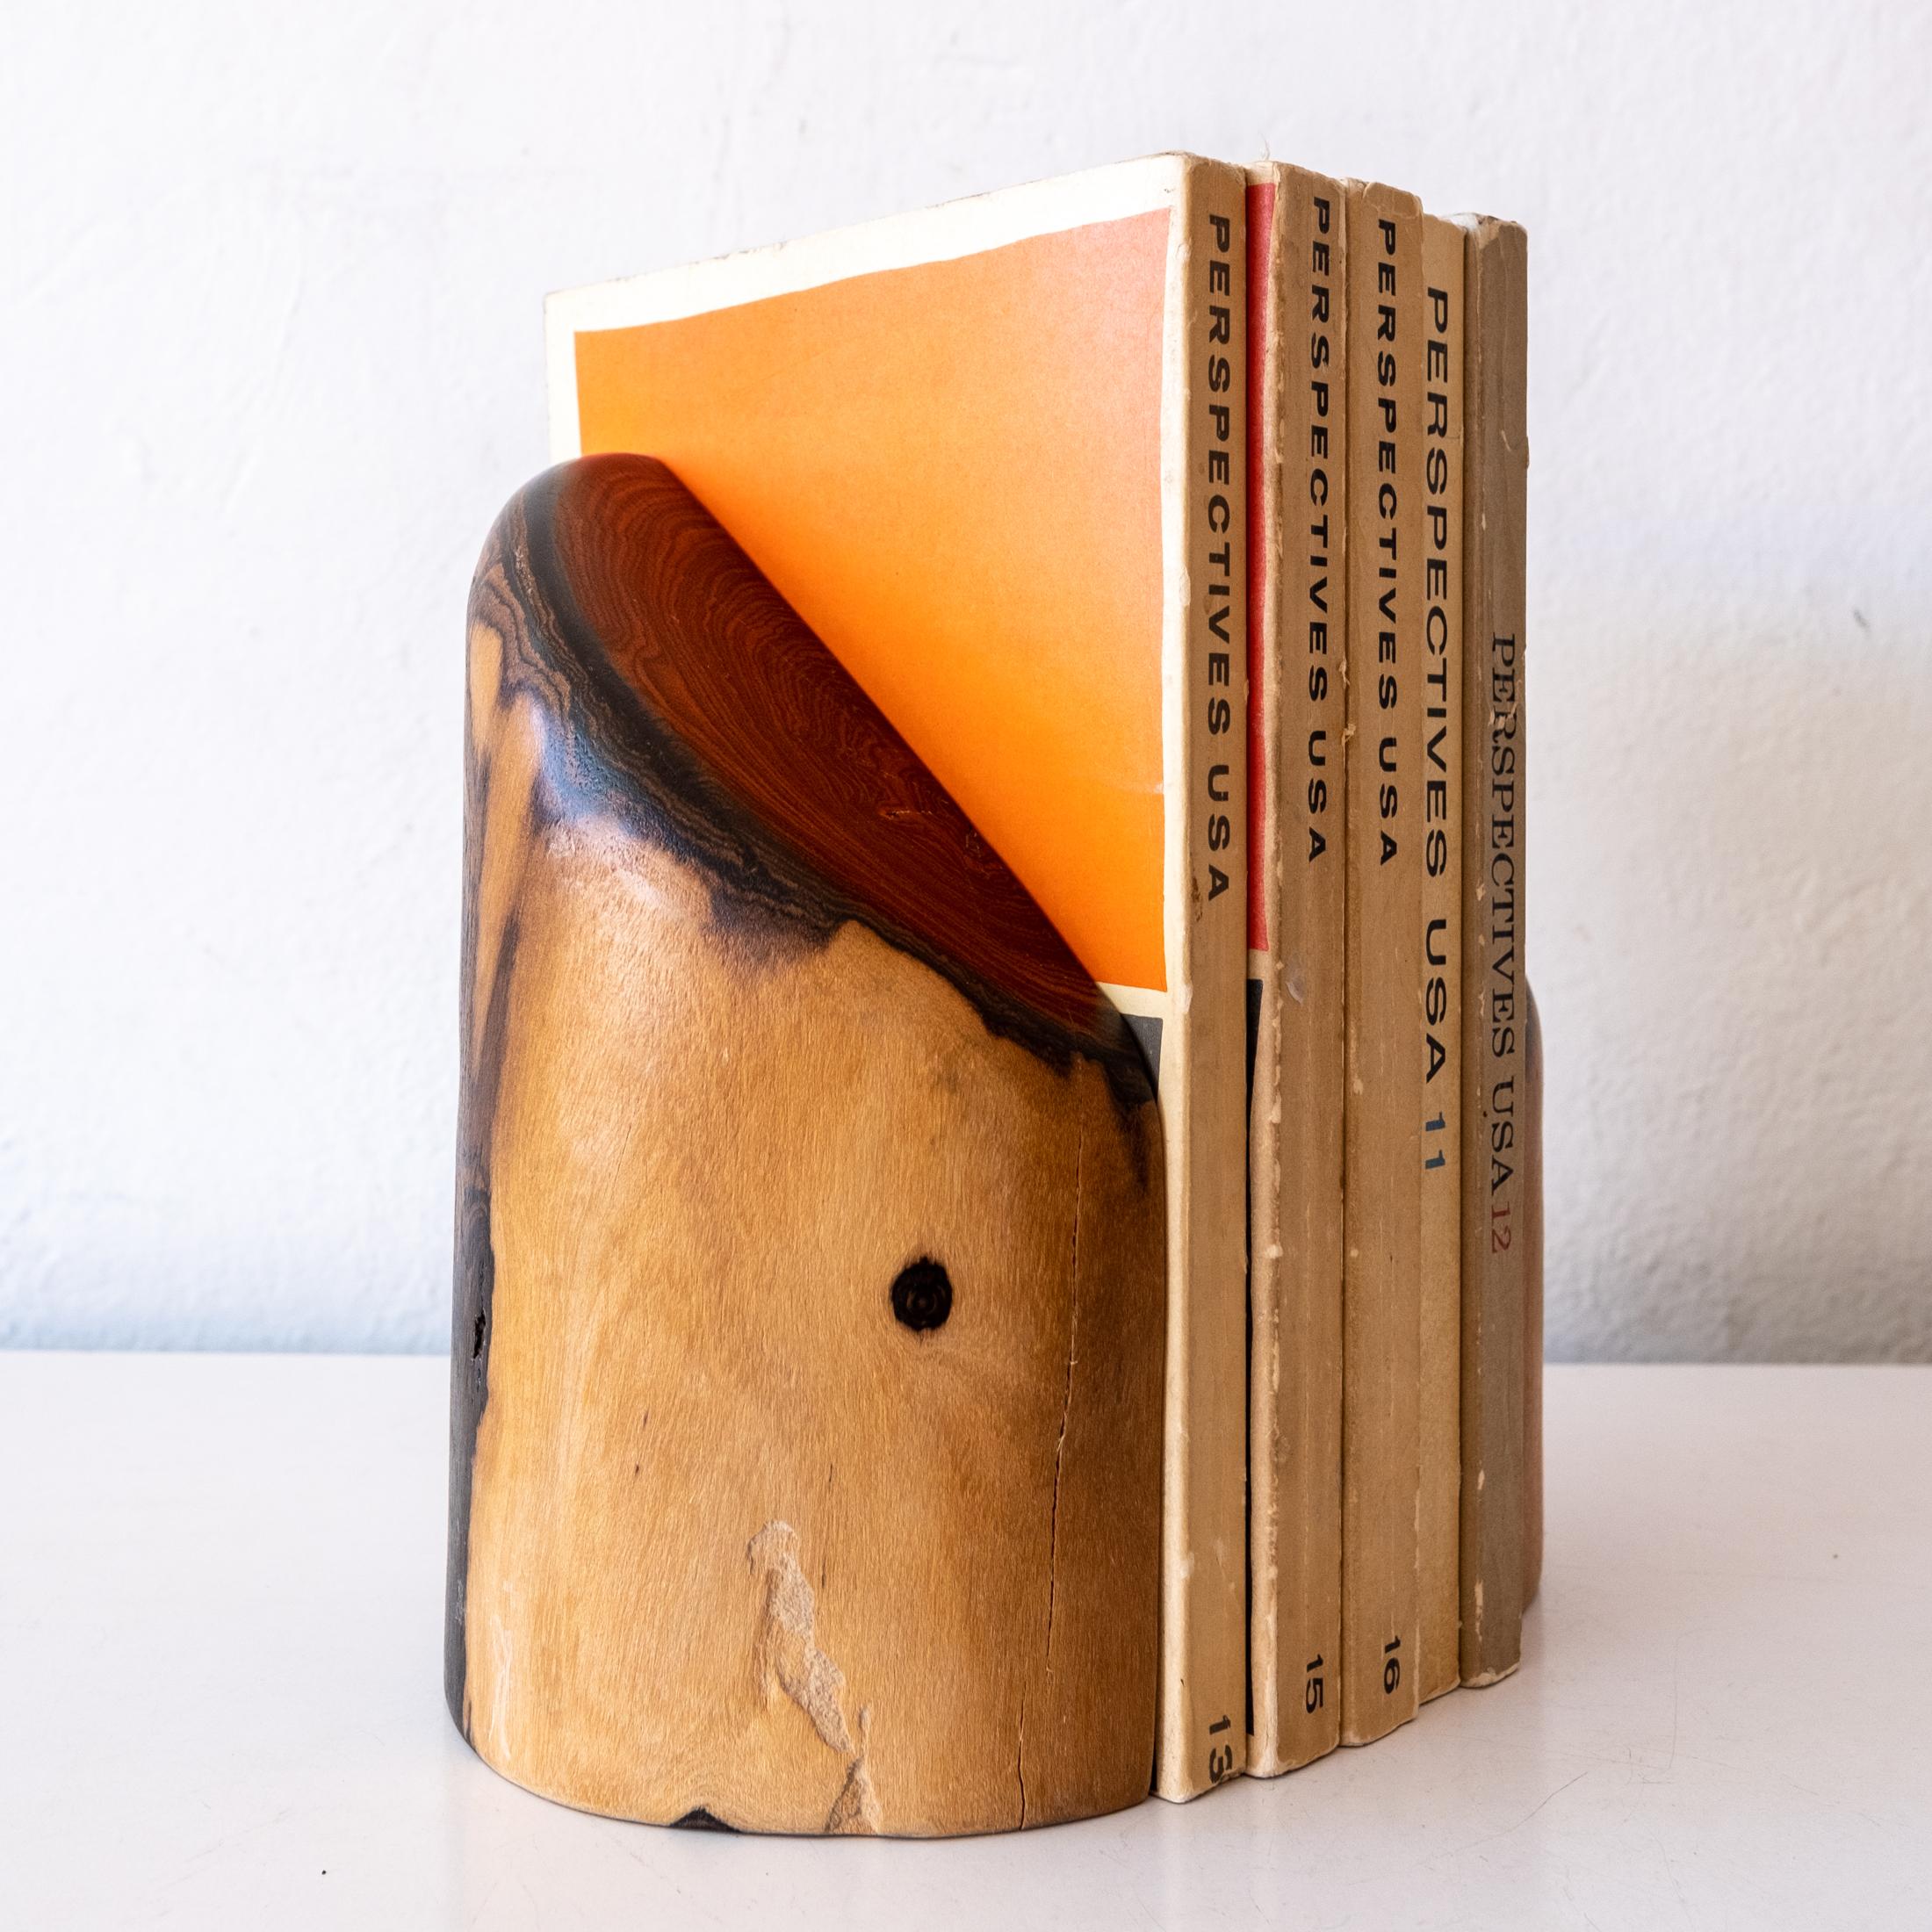 Handgeschnitzte Buchstützen aus Cocobolo vom mexikanischen Modernisten Don Shoemaker. Behält die Originaletiketten aus seiner Werkstatt in Señal Mexico. Dieser Entwurf war Teil der Don S. Shoemaker-Ausstellung 2017 im Museo de Arte Moderno in